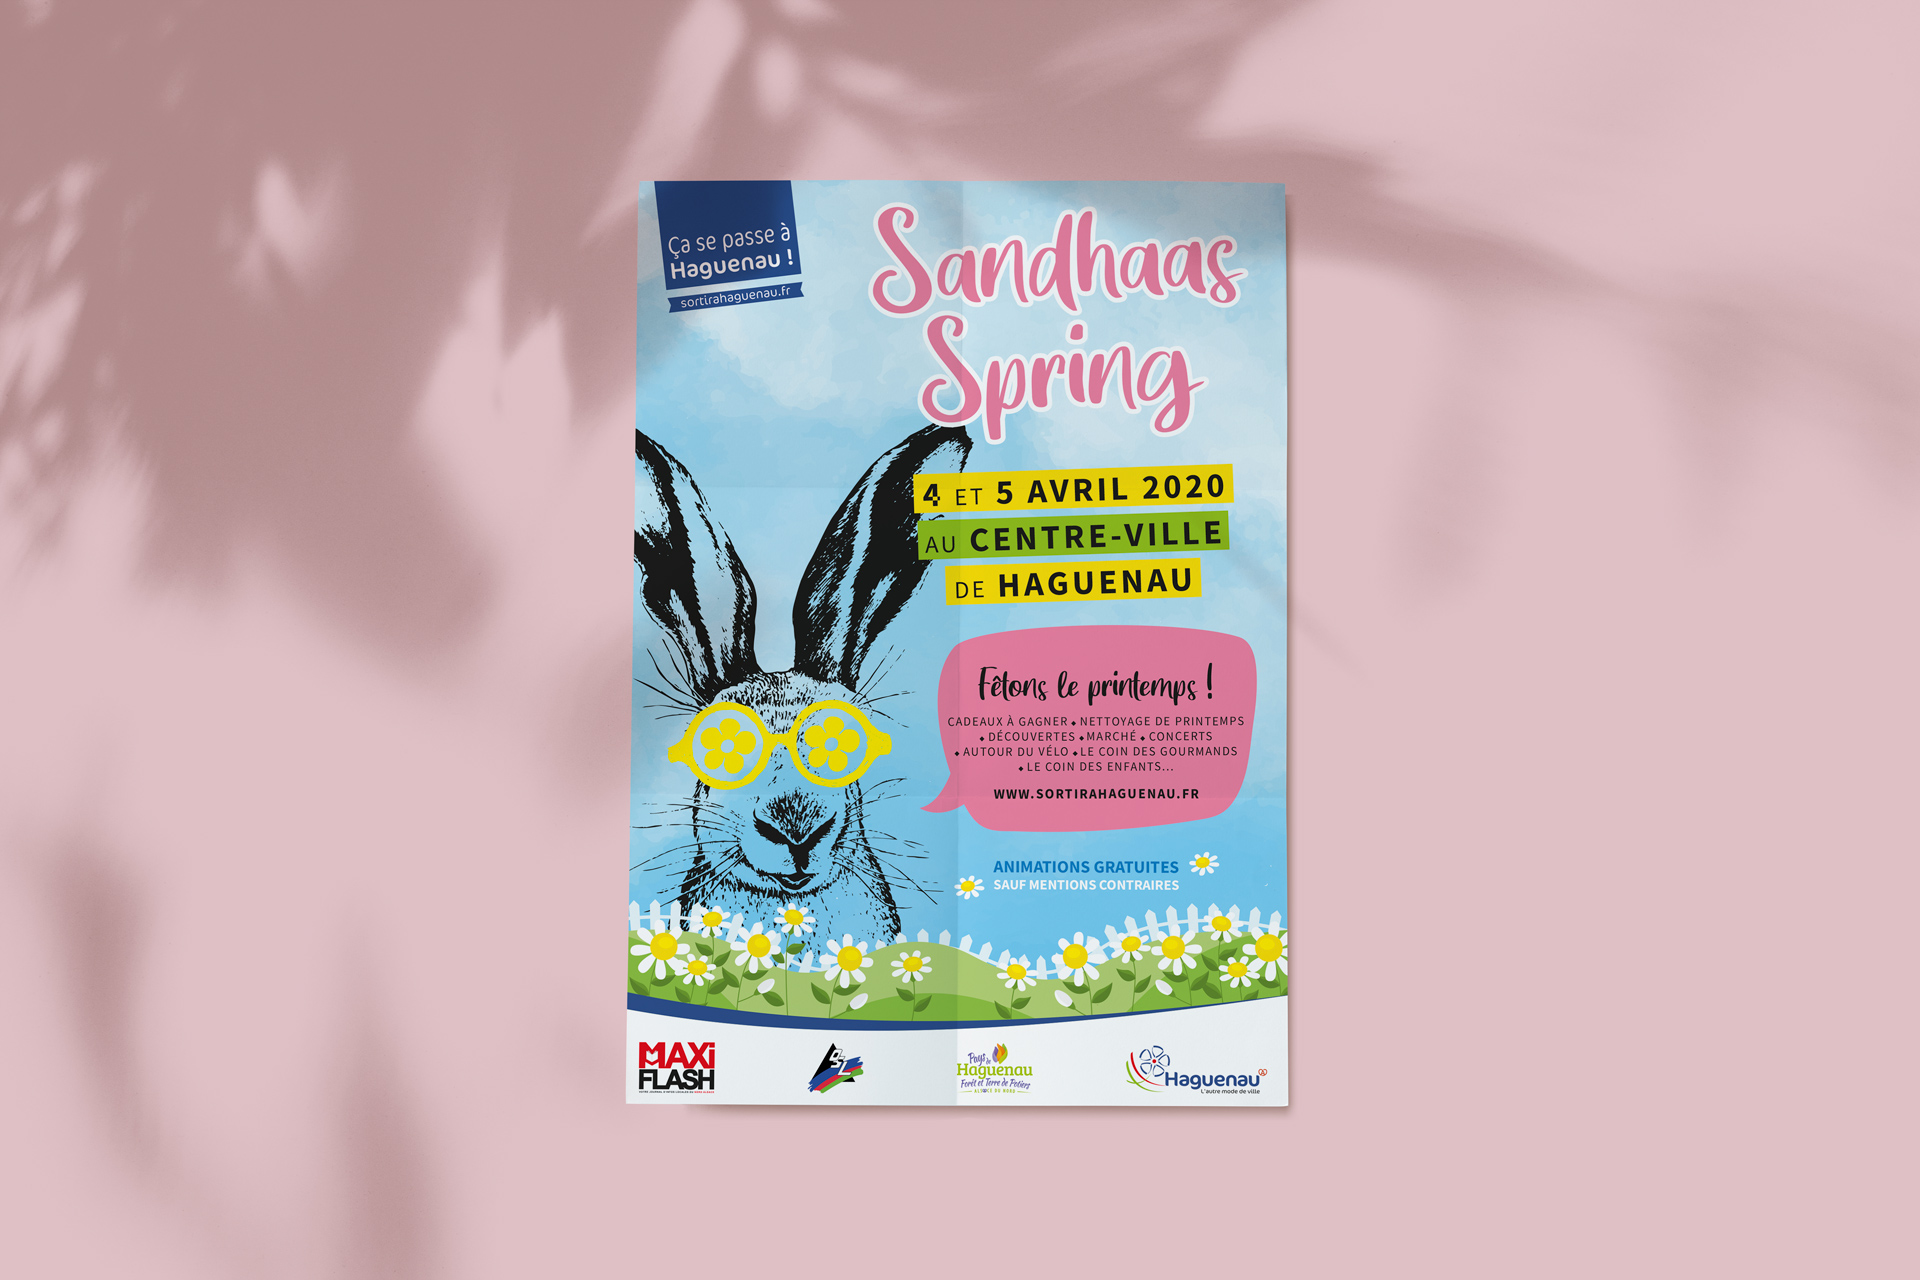 Sandhaas Spring